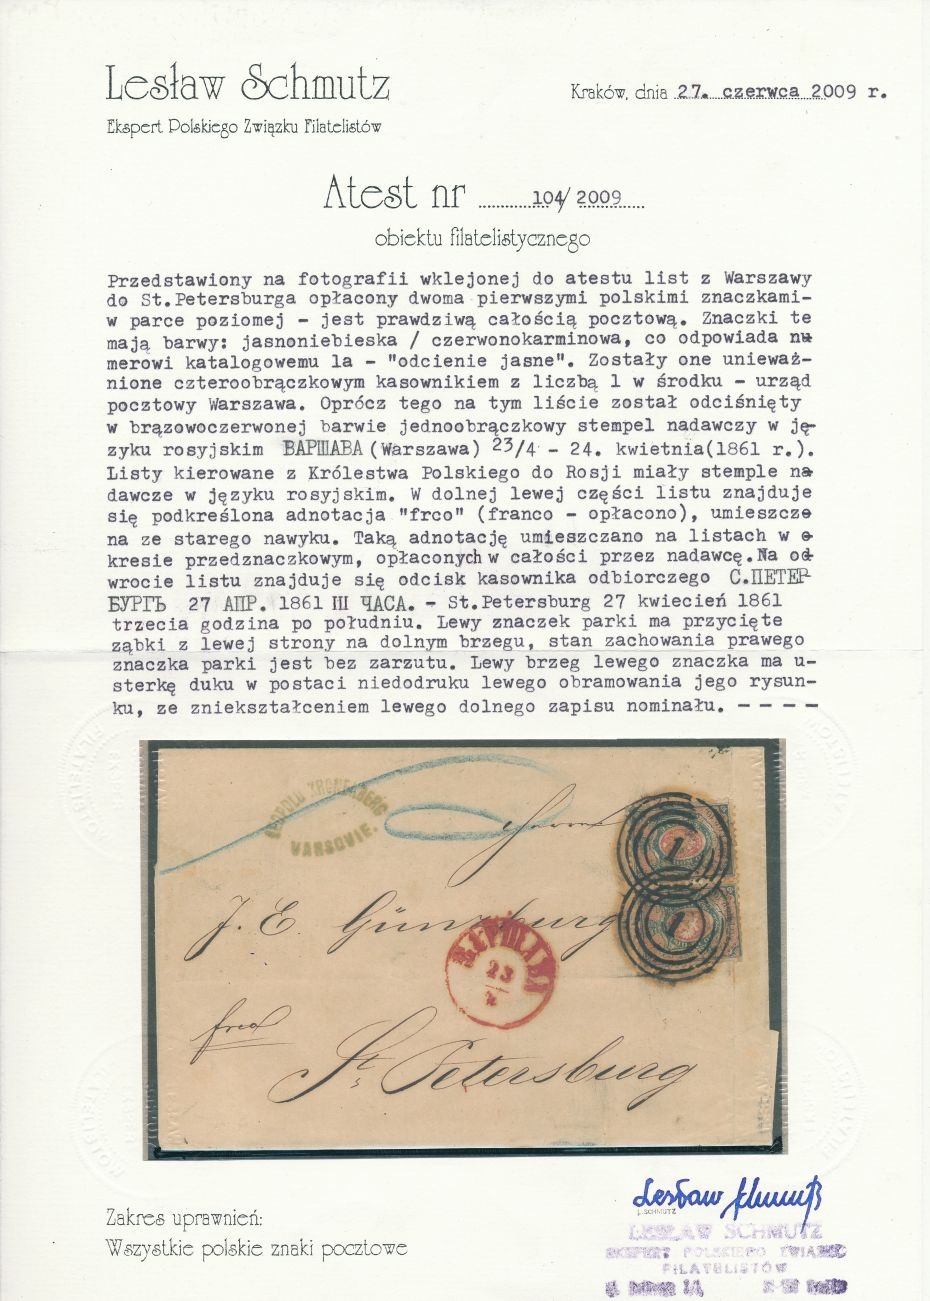 1 - Warszawa (318) 1a atest (L.Schmutz) obwoluty dwułutowego listu, parka znaczków, do St. Petersburga do Rosji, poz. 81 i 82, pkt.1B